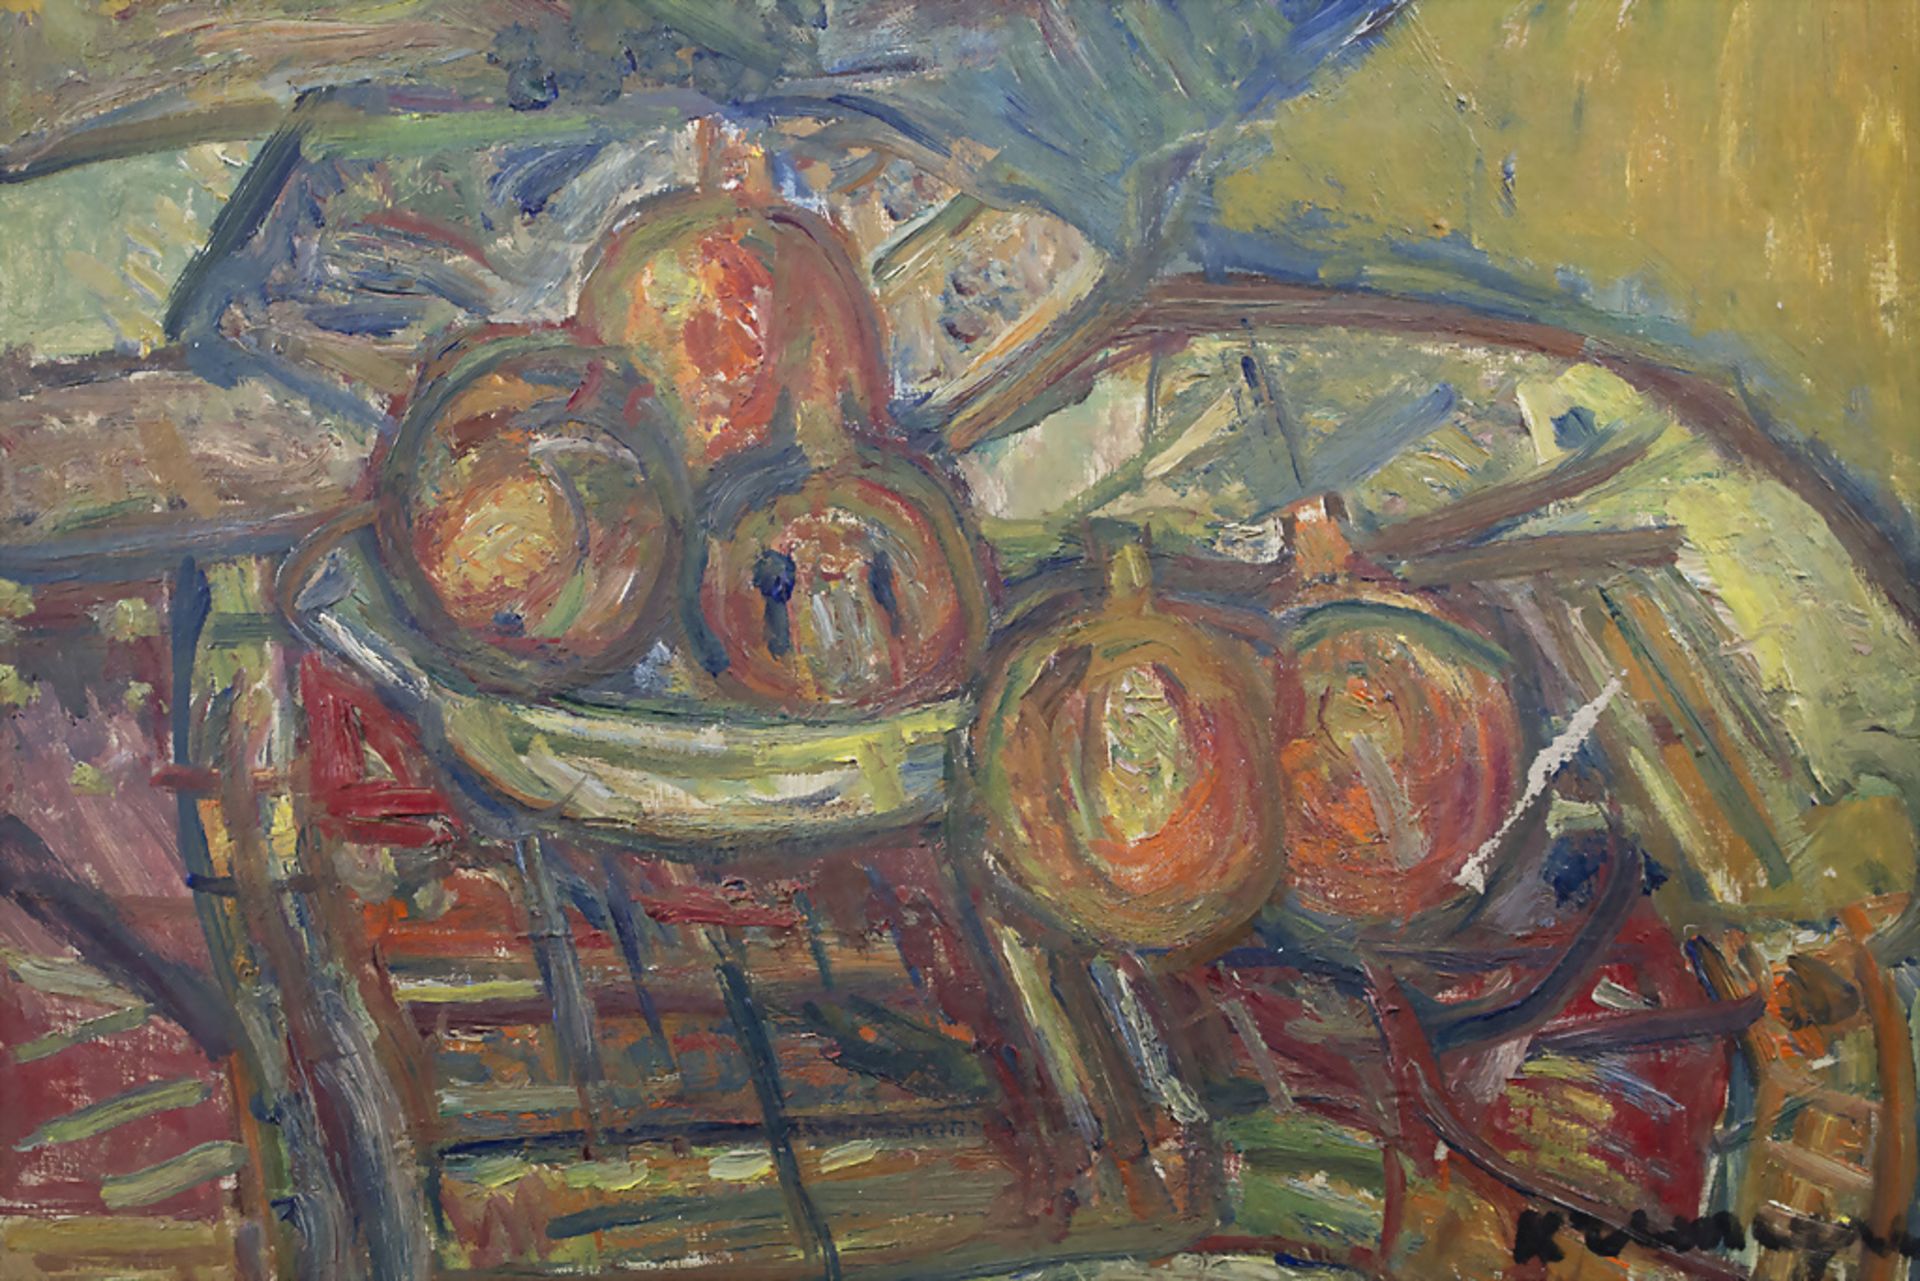 Pinchus KREMEGNE (1890-1981), 'Stillleben mit Zitrusfrüchten' / 'Still life with citrus fruits' - Bild 3 aus 5